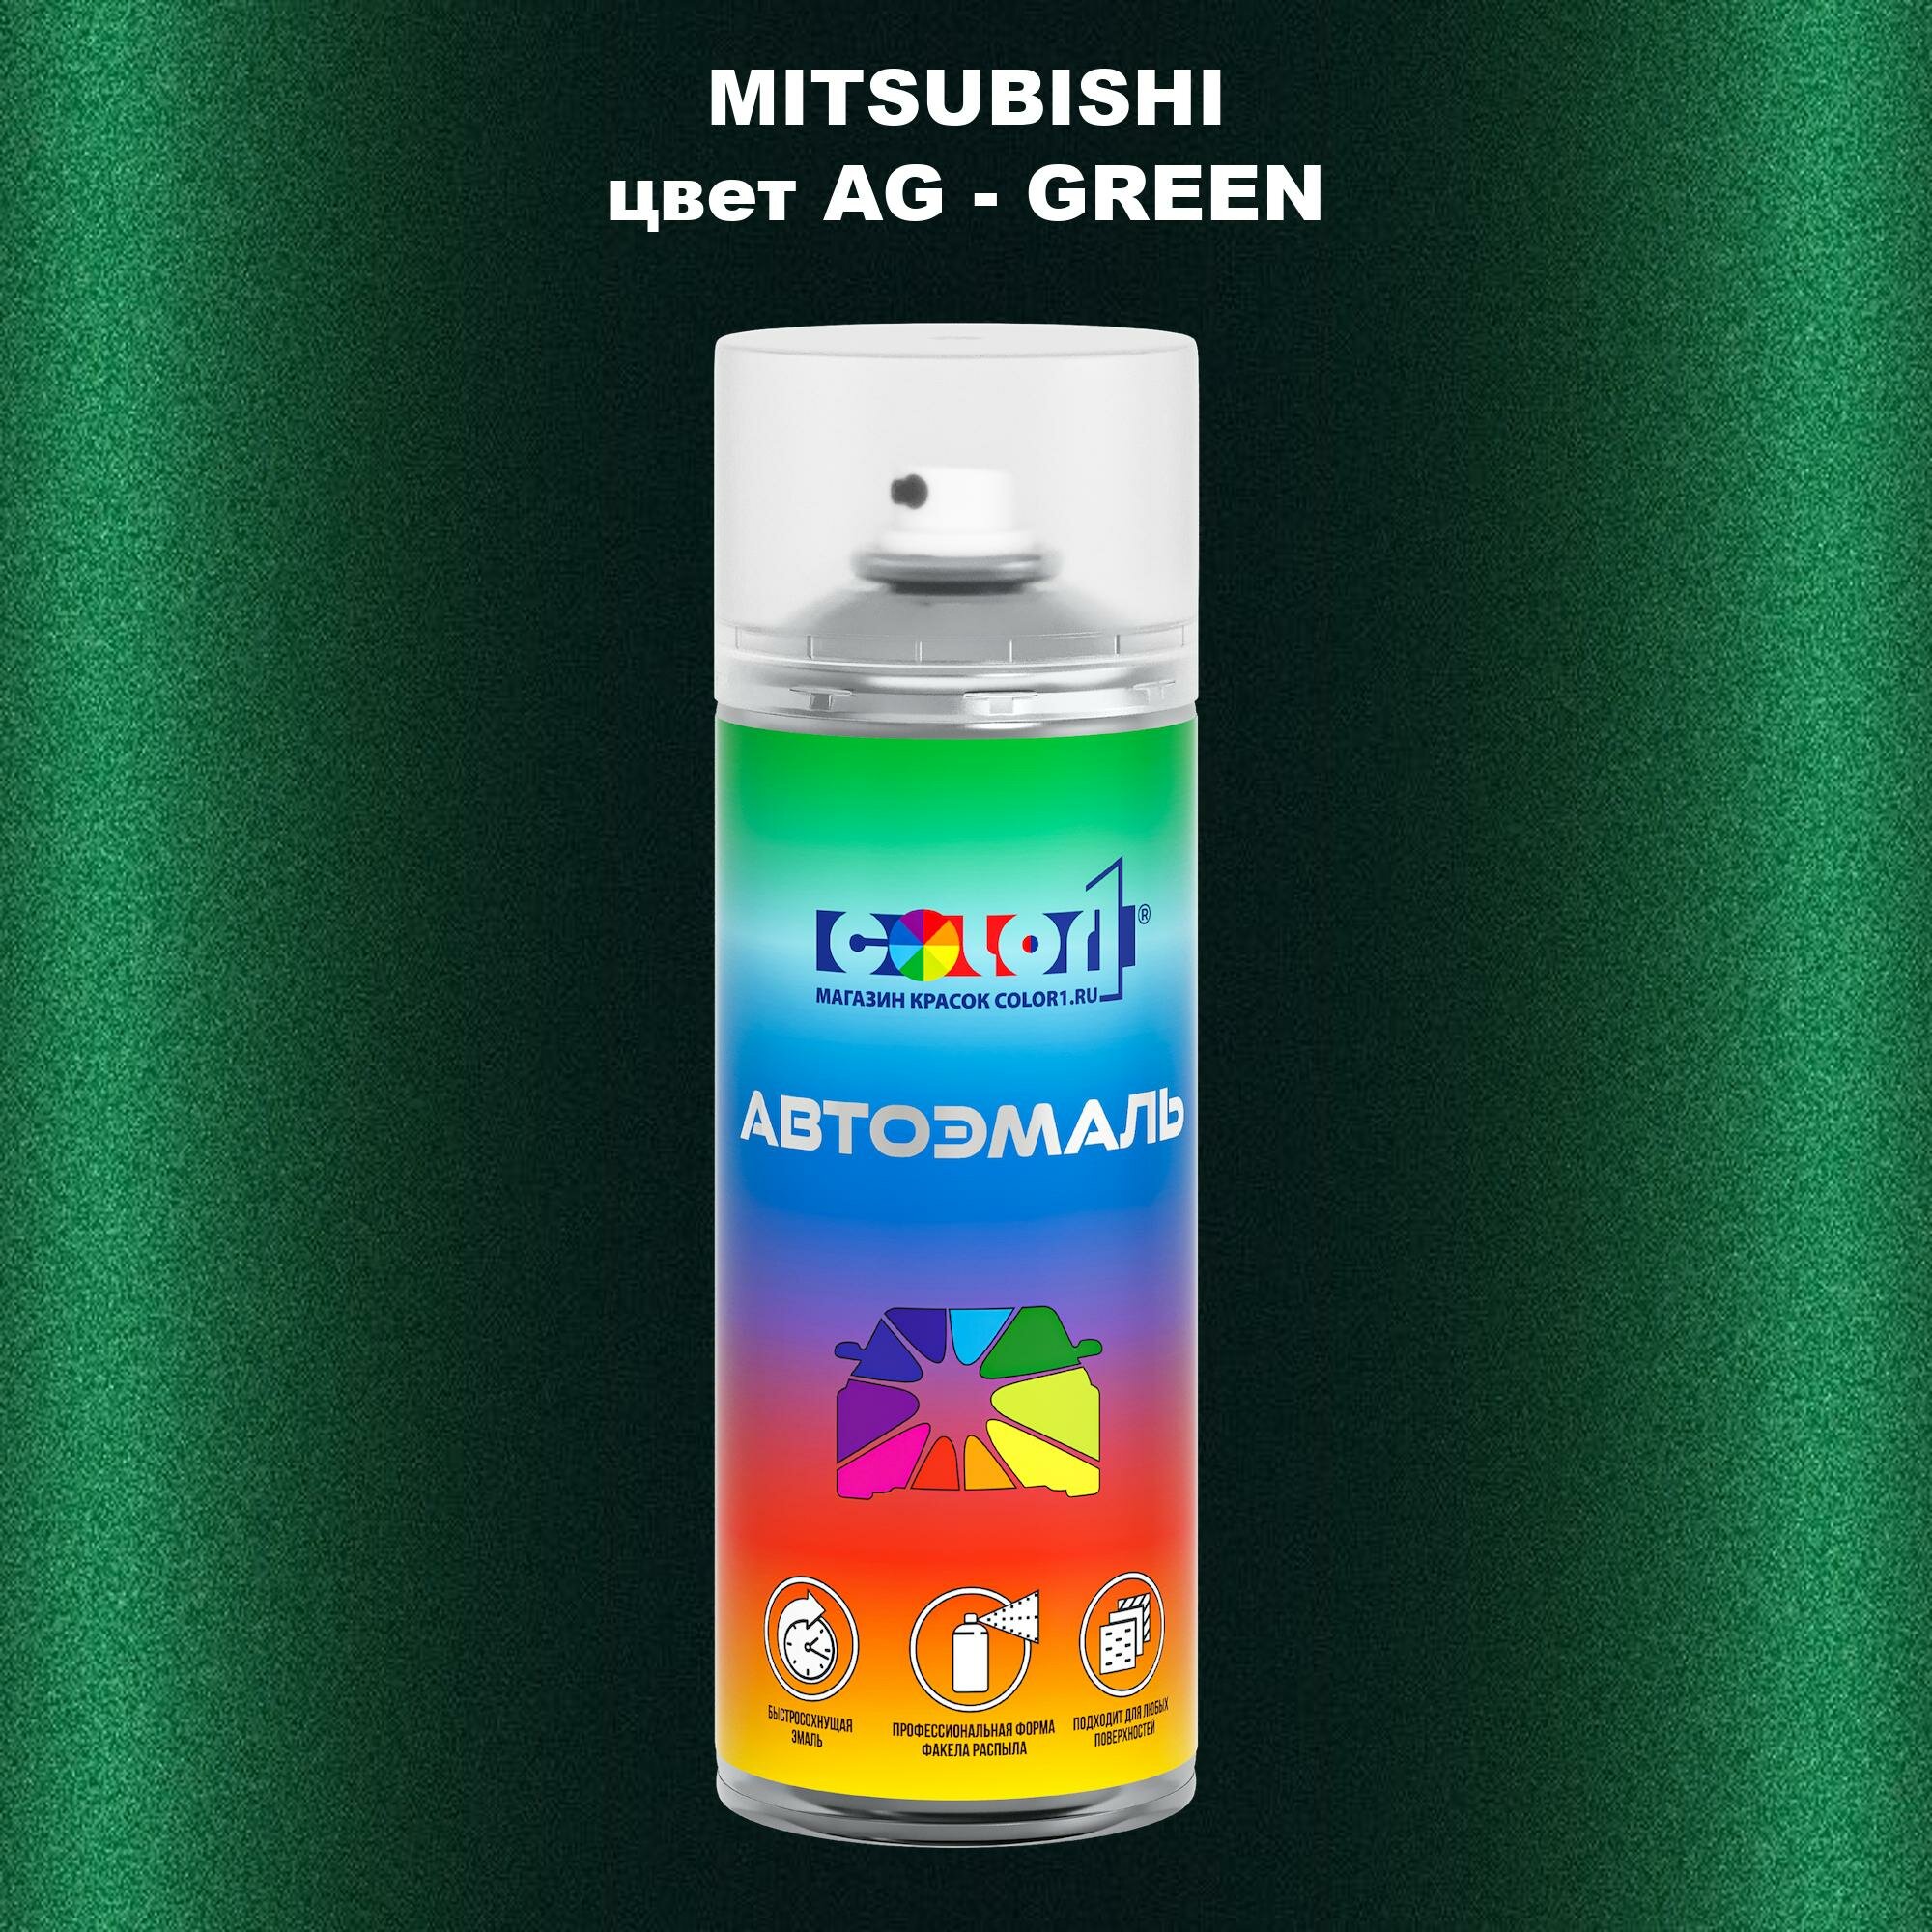 Аэрозольная краска COLOR1 для MITSUBISHI, цвет AG - GREEN